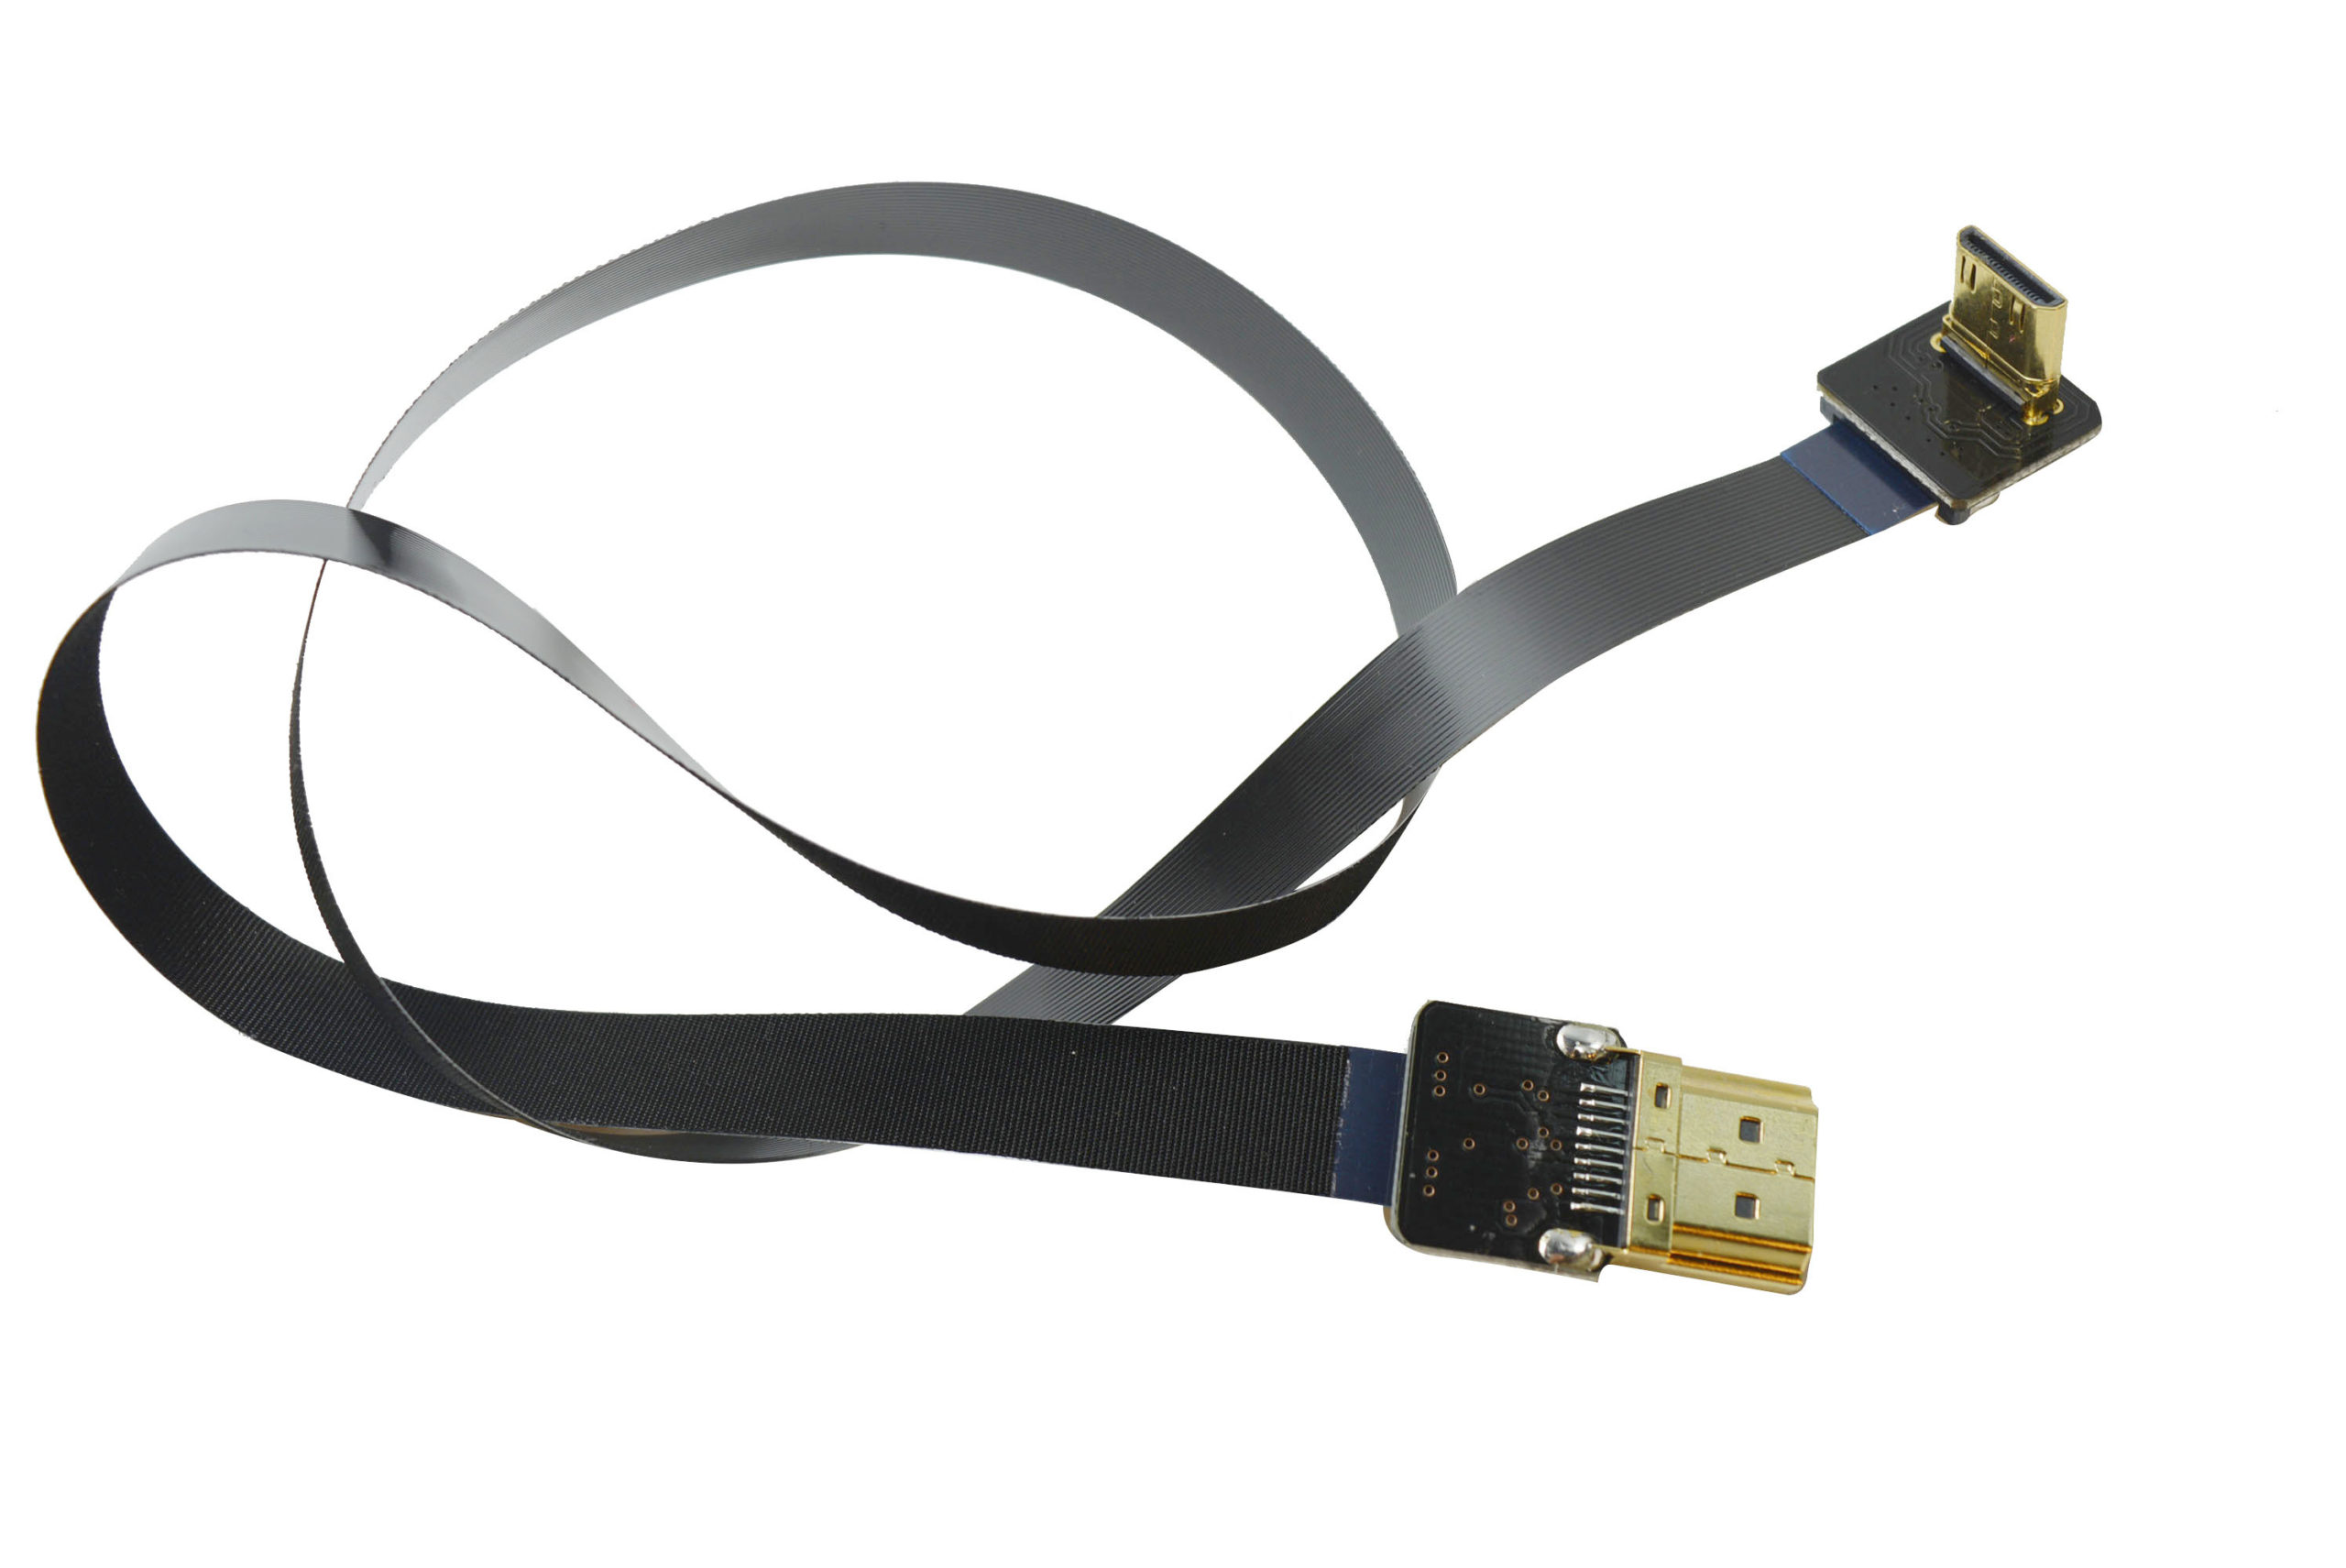 CABLE MICRO HDMI (TIPO D) A MINI HDMI (TIPO C) 30CM M/M